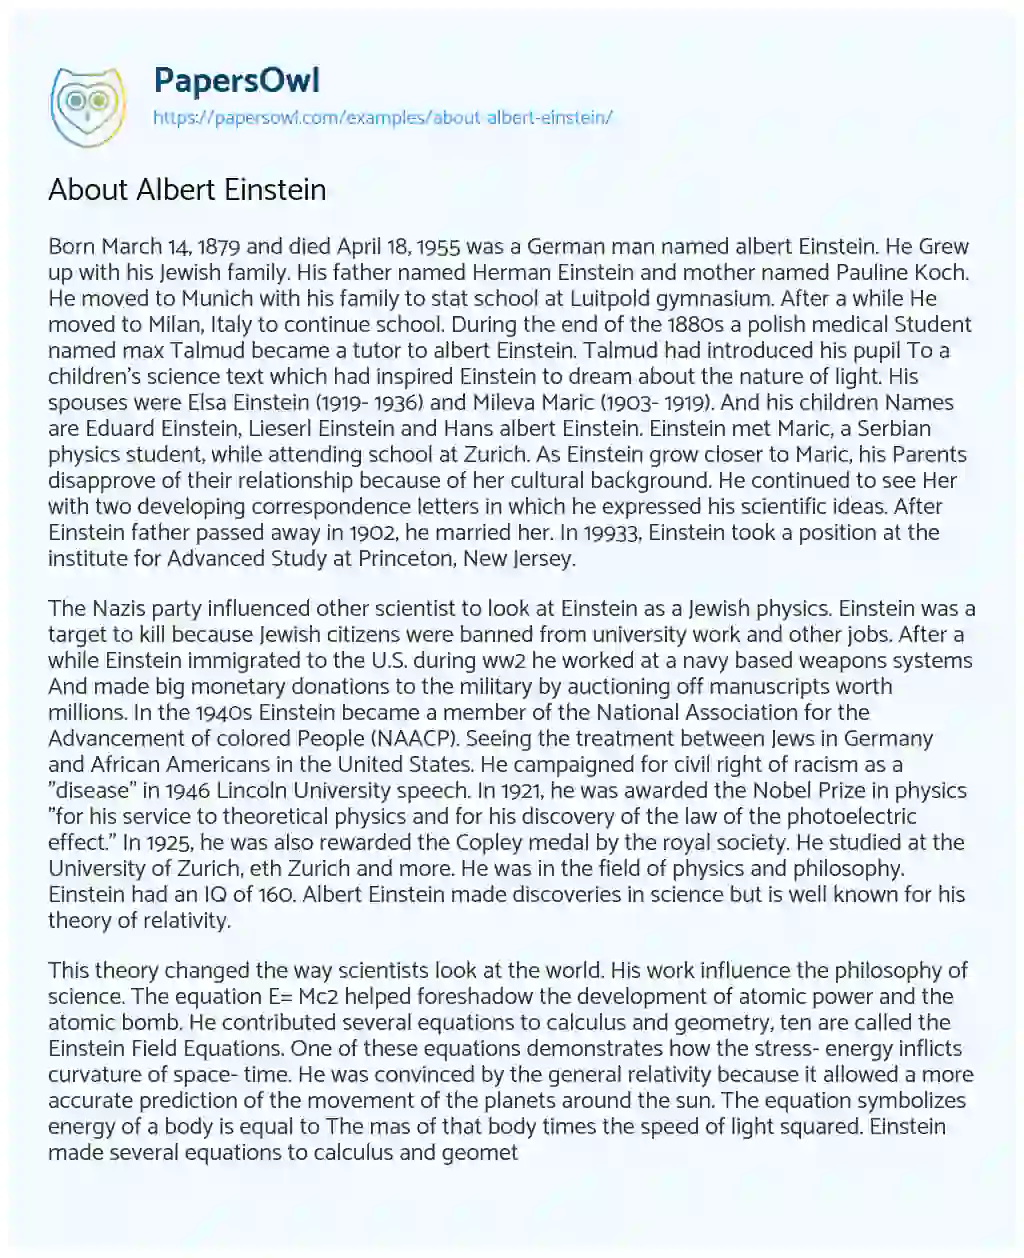 About Albert Einstein essay